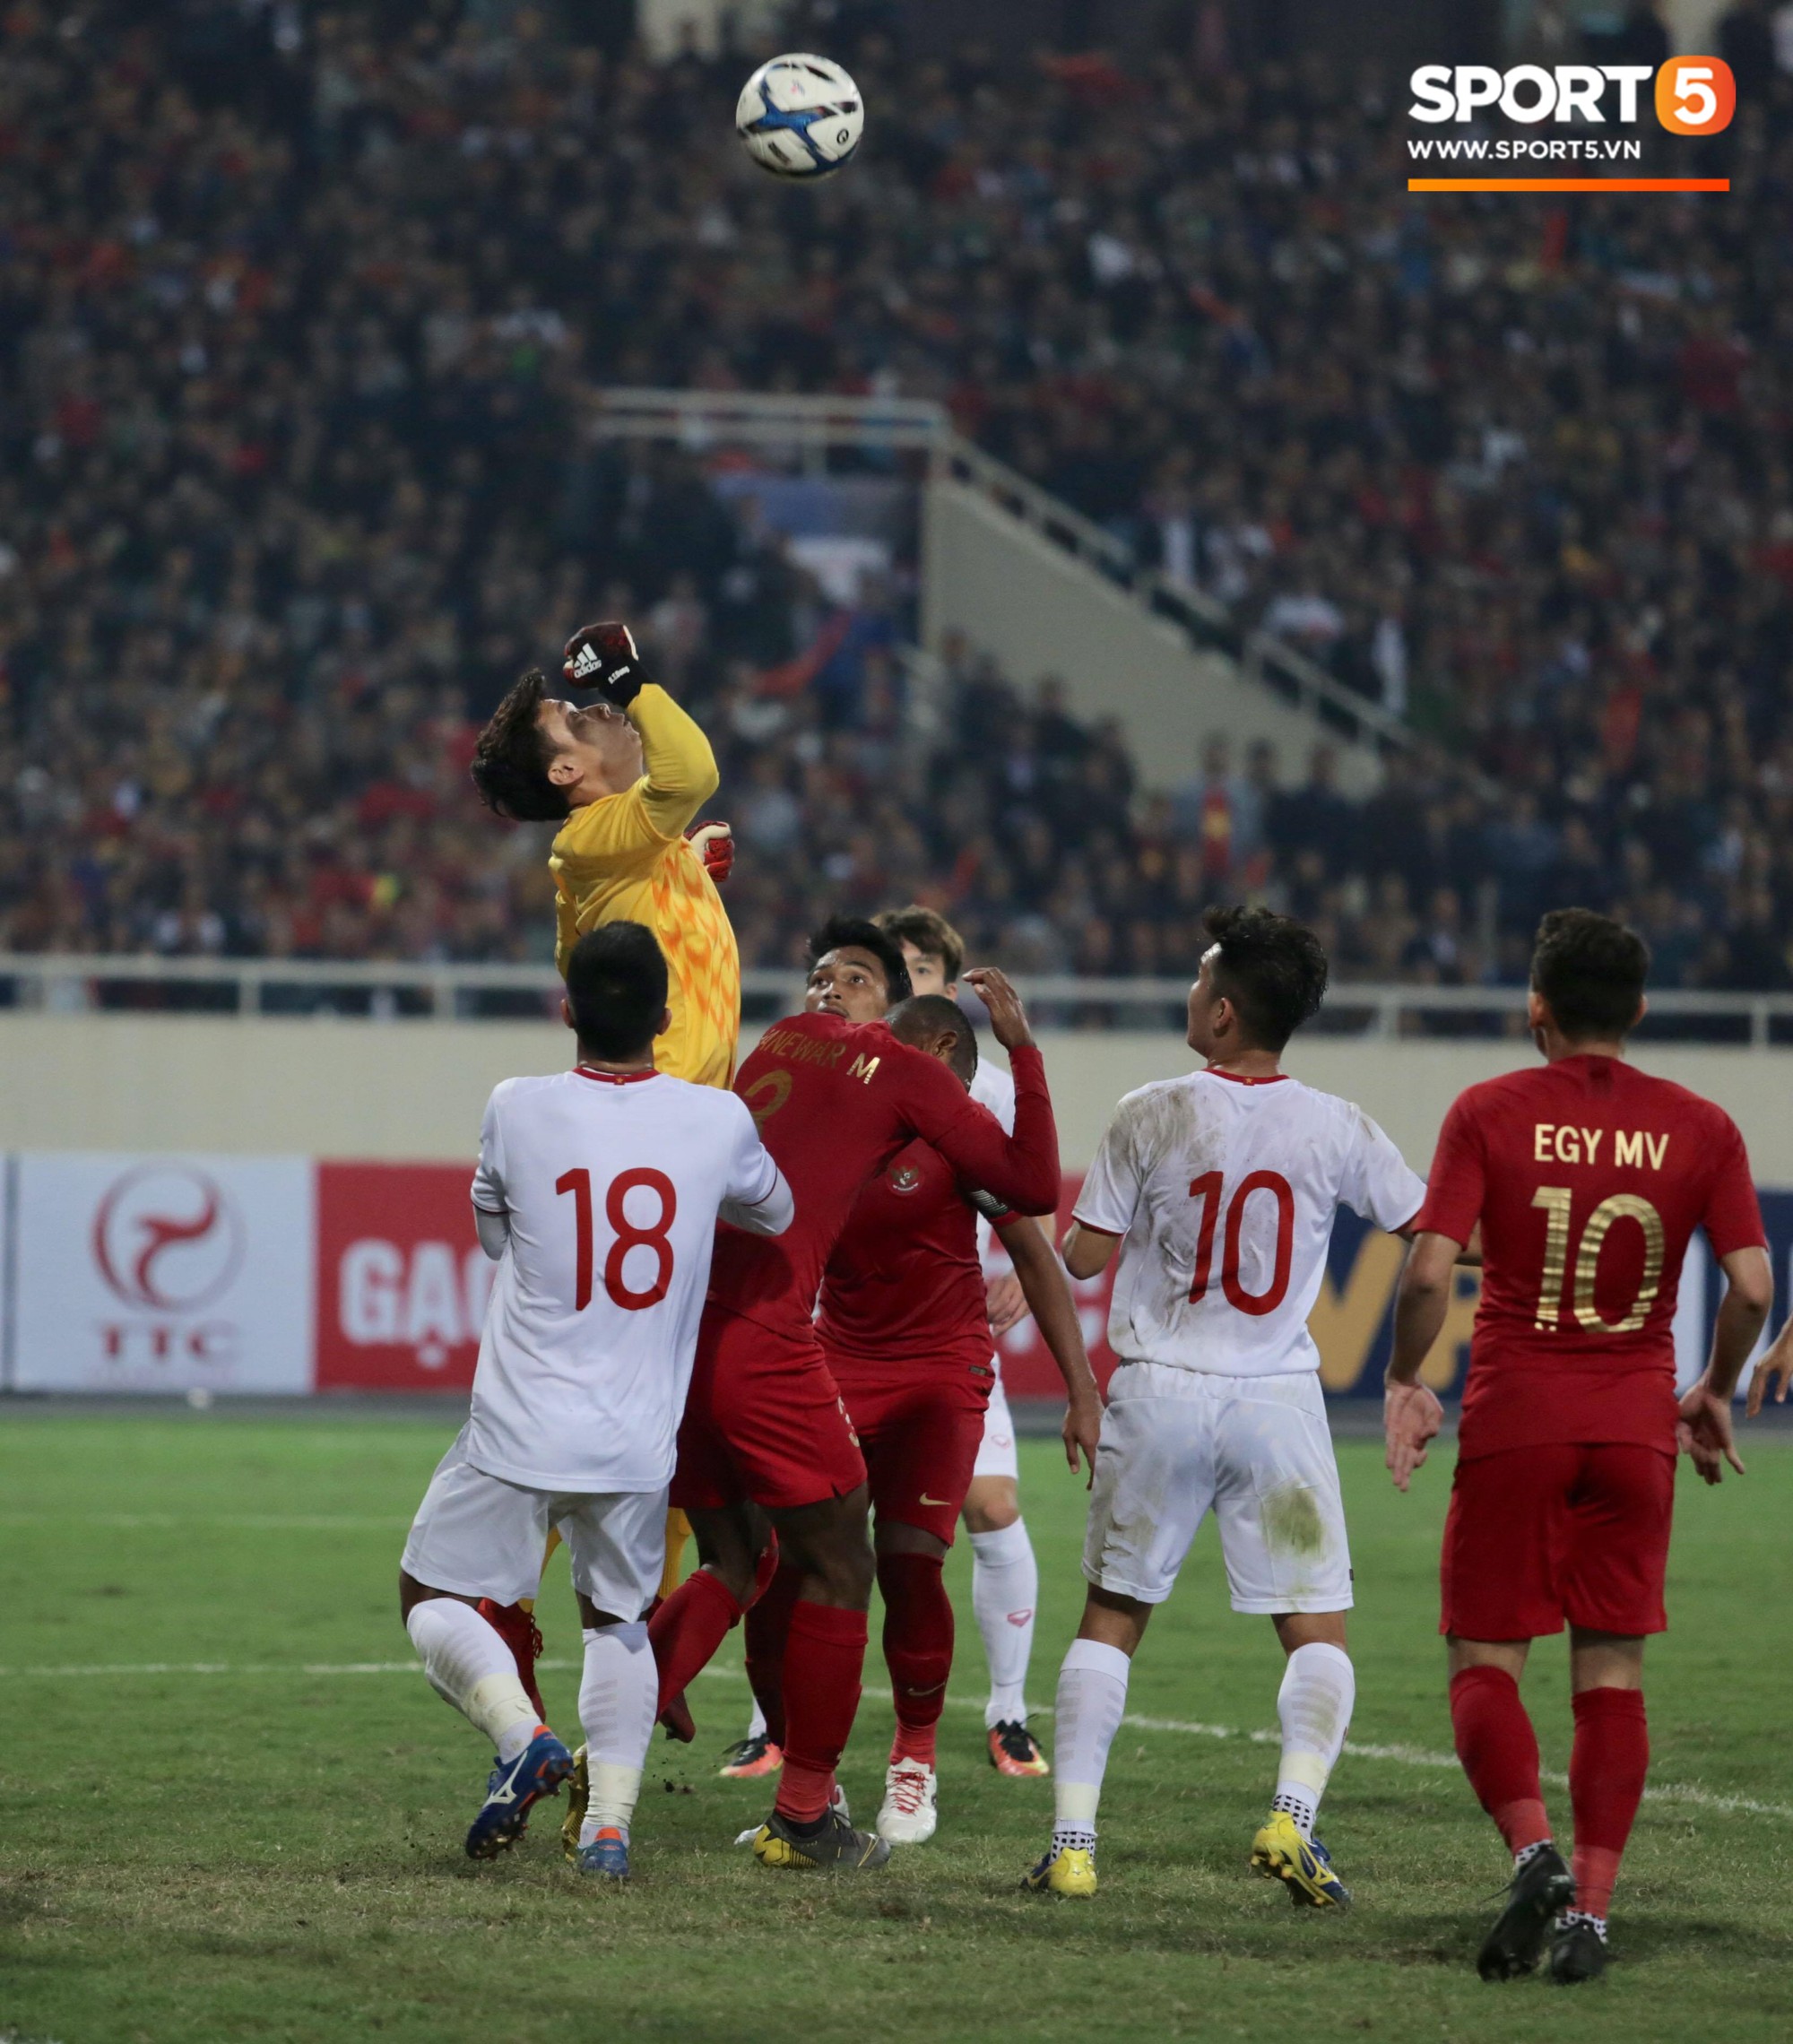 Thủ thành Bùi Tiến Dũng xử lý khó hiểu trong trận đấu với U23 Indonesia - Ảnh 12.